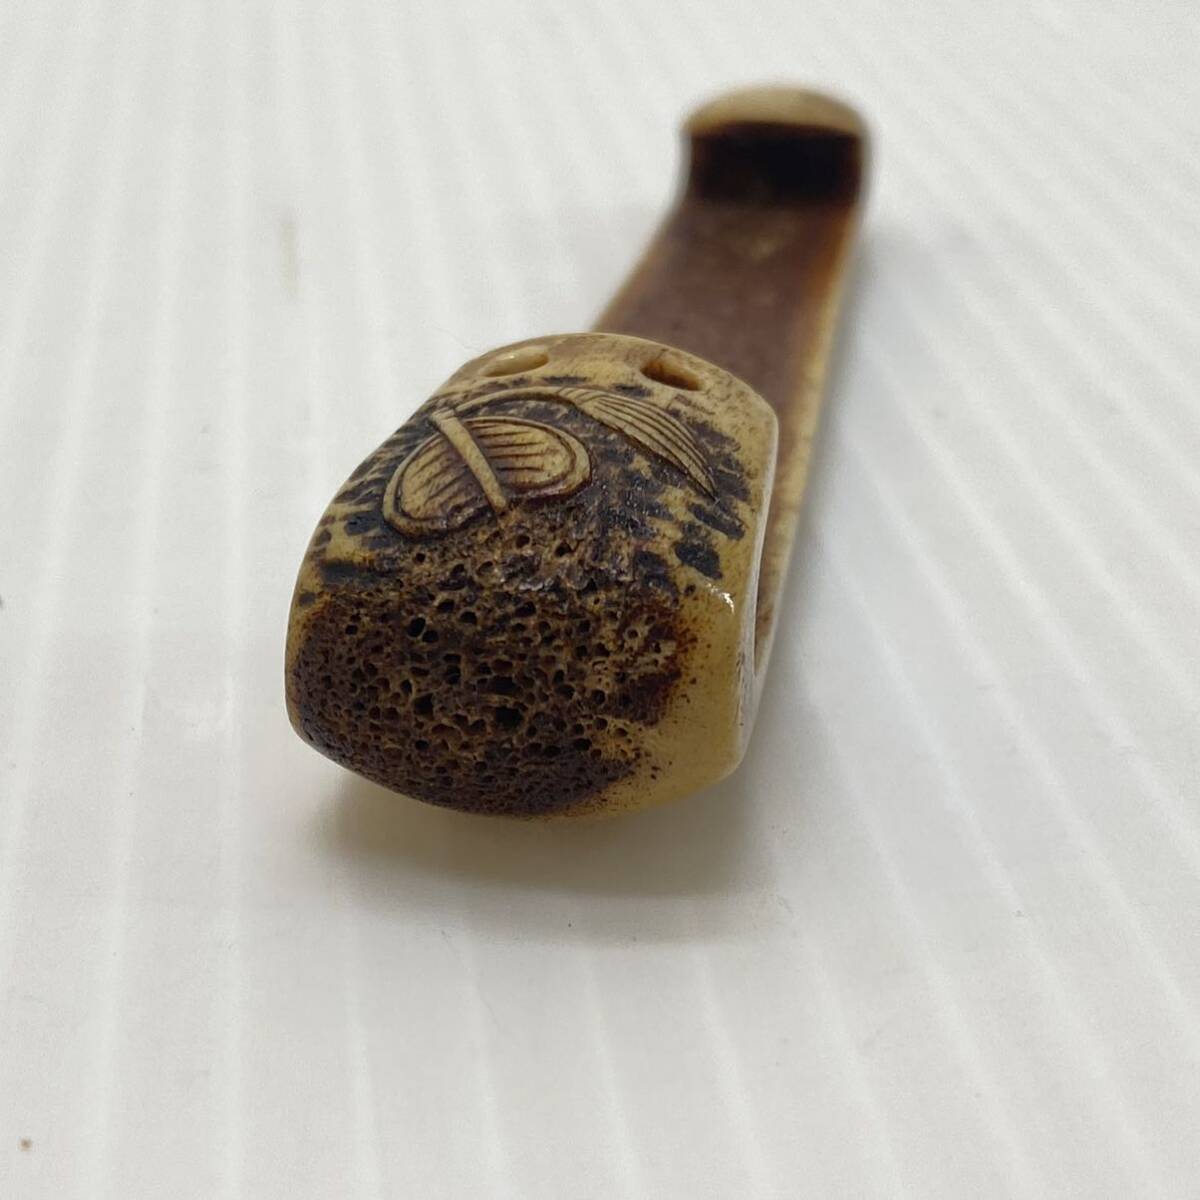  олень угол .. предмет разница netsuke старый инструмент антиквариат времена предмет Edo . map скульптура obi щипцы античный коллекция 